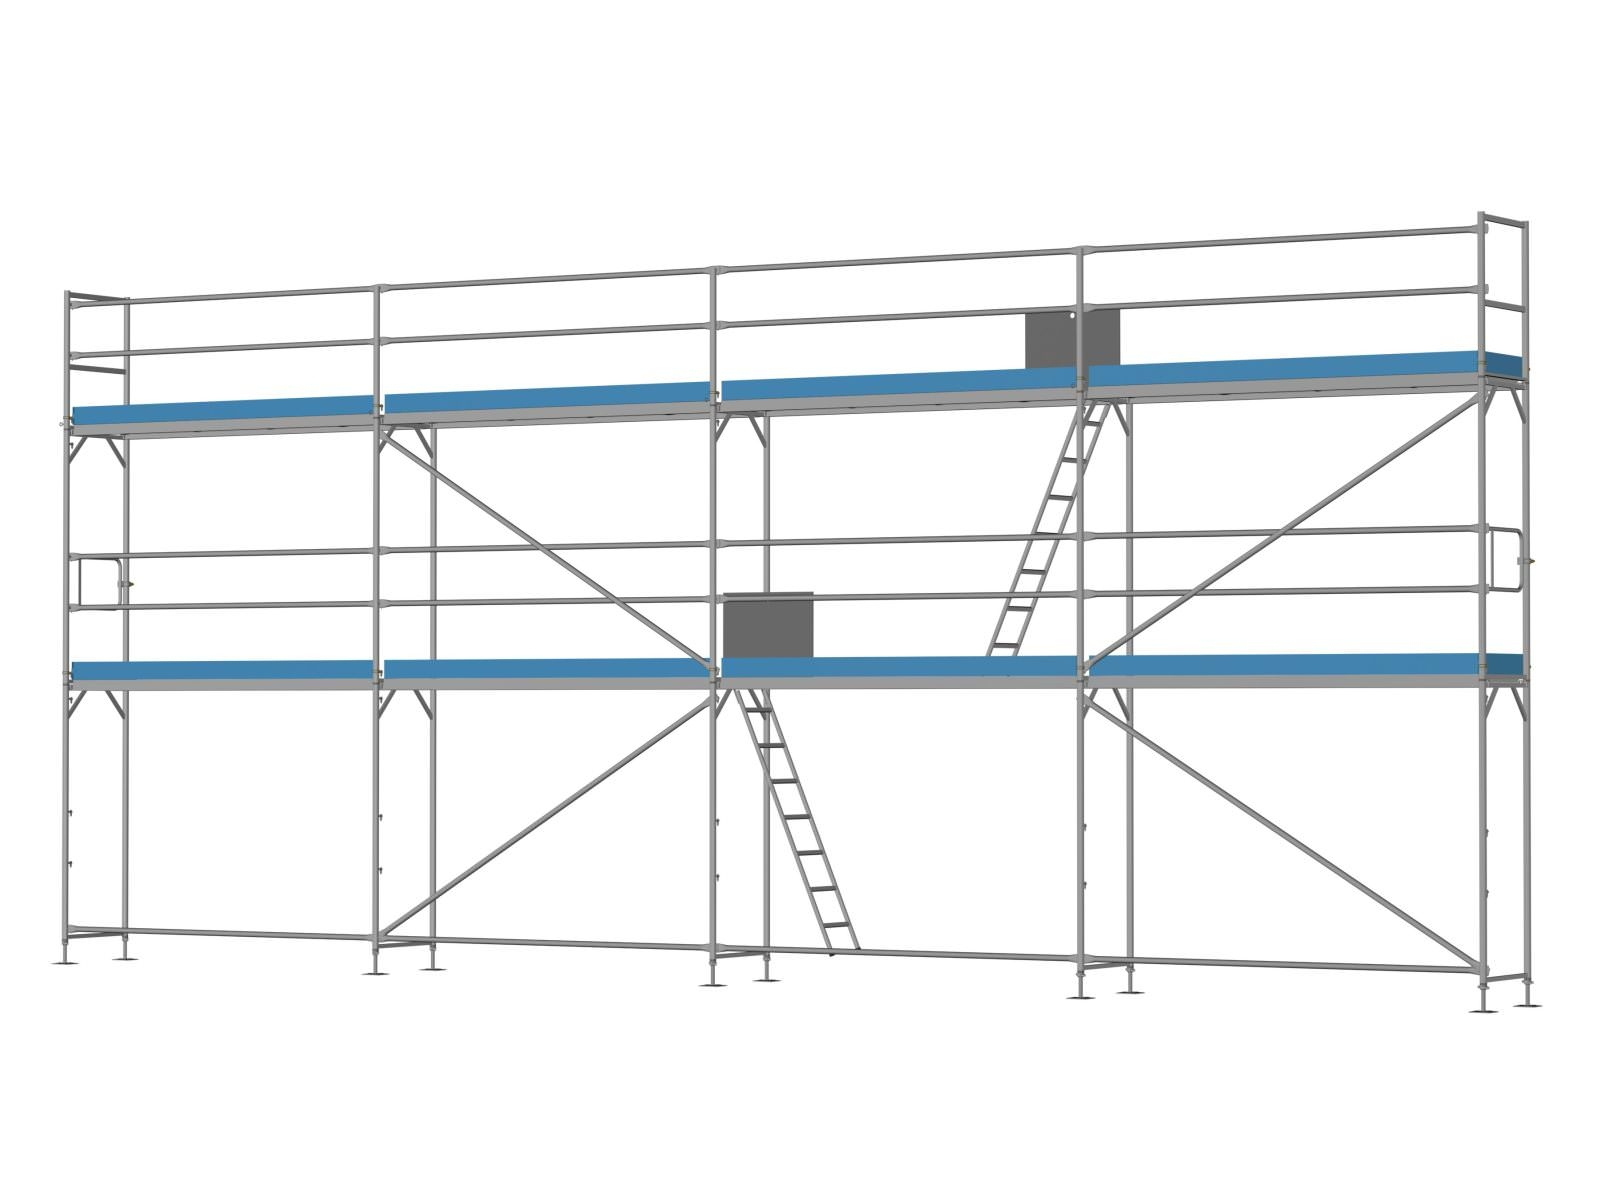 Stahl Traufseitengerüst 72 qm - 3,0 m Felder - 12 m lang - 6 m Arbeitshöhe - Komplettpaket